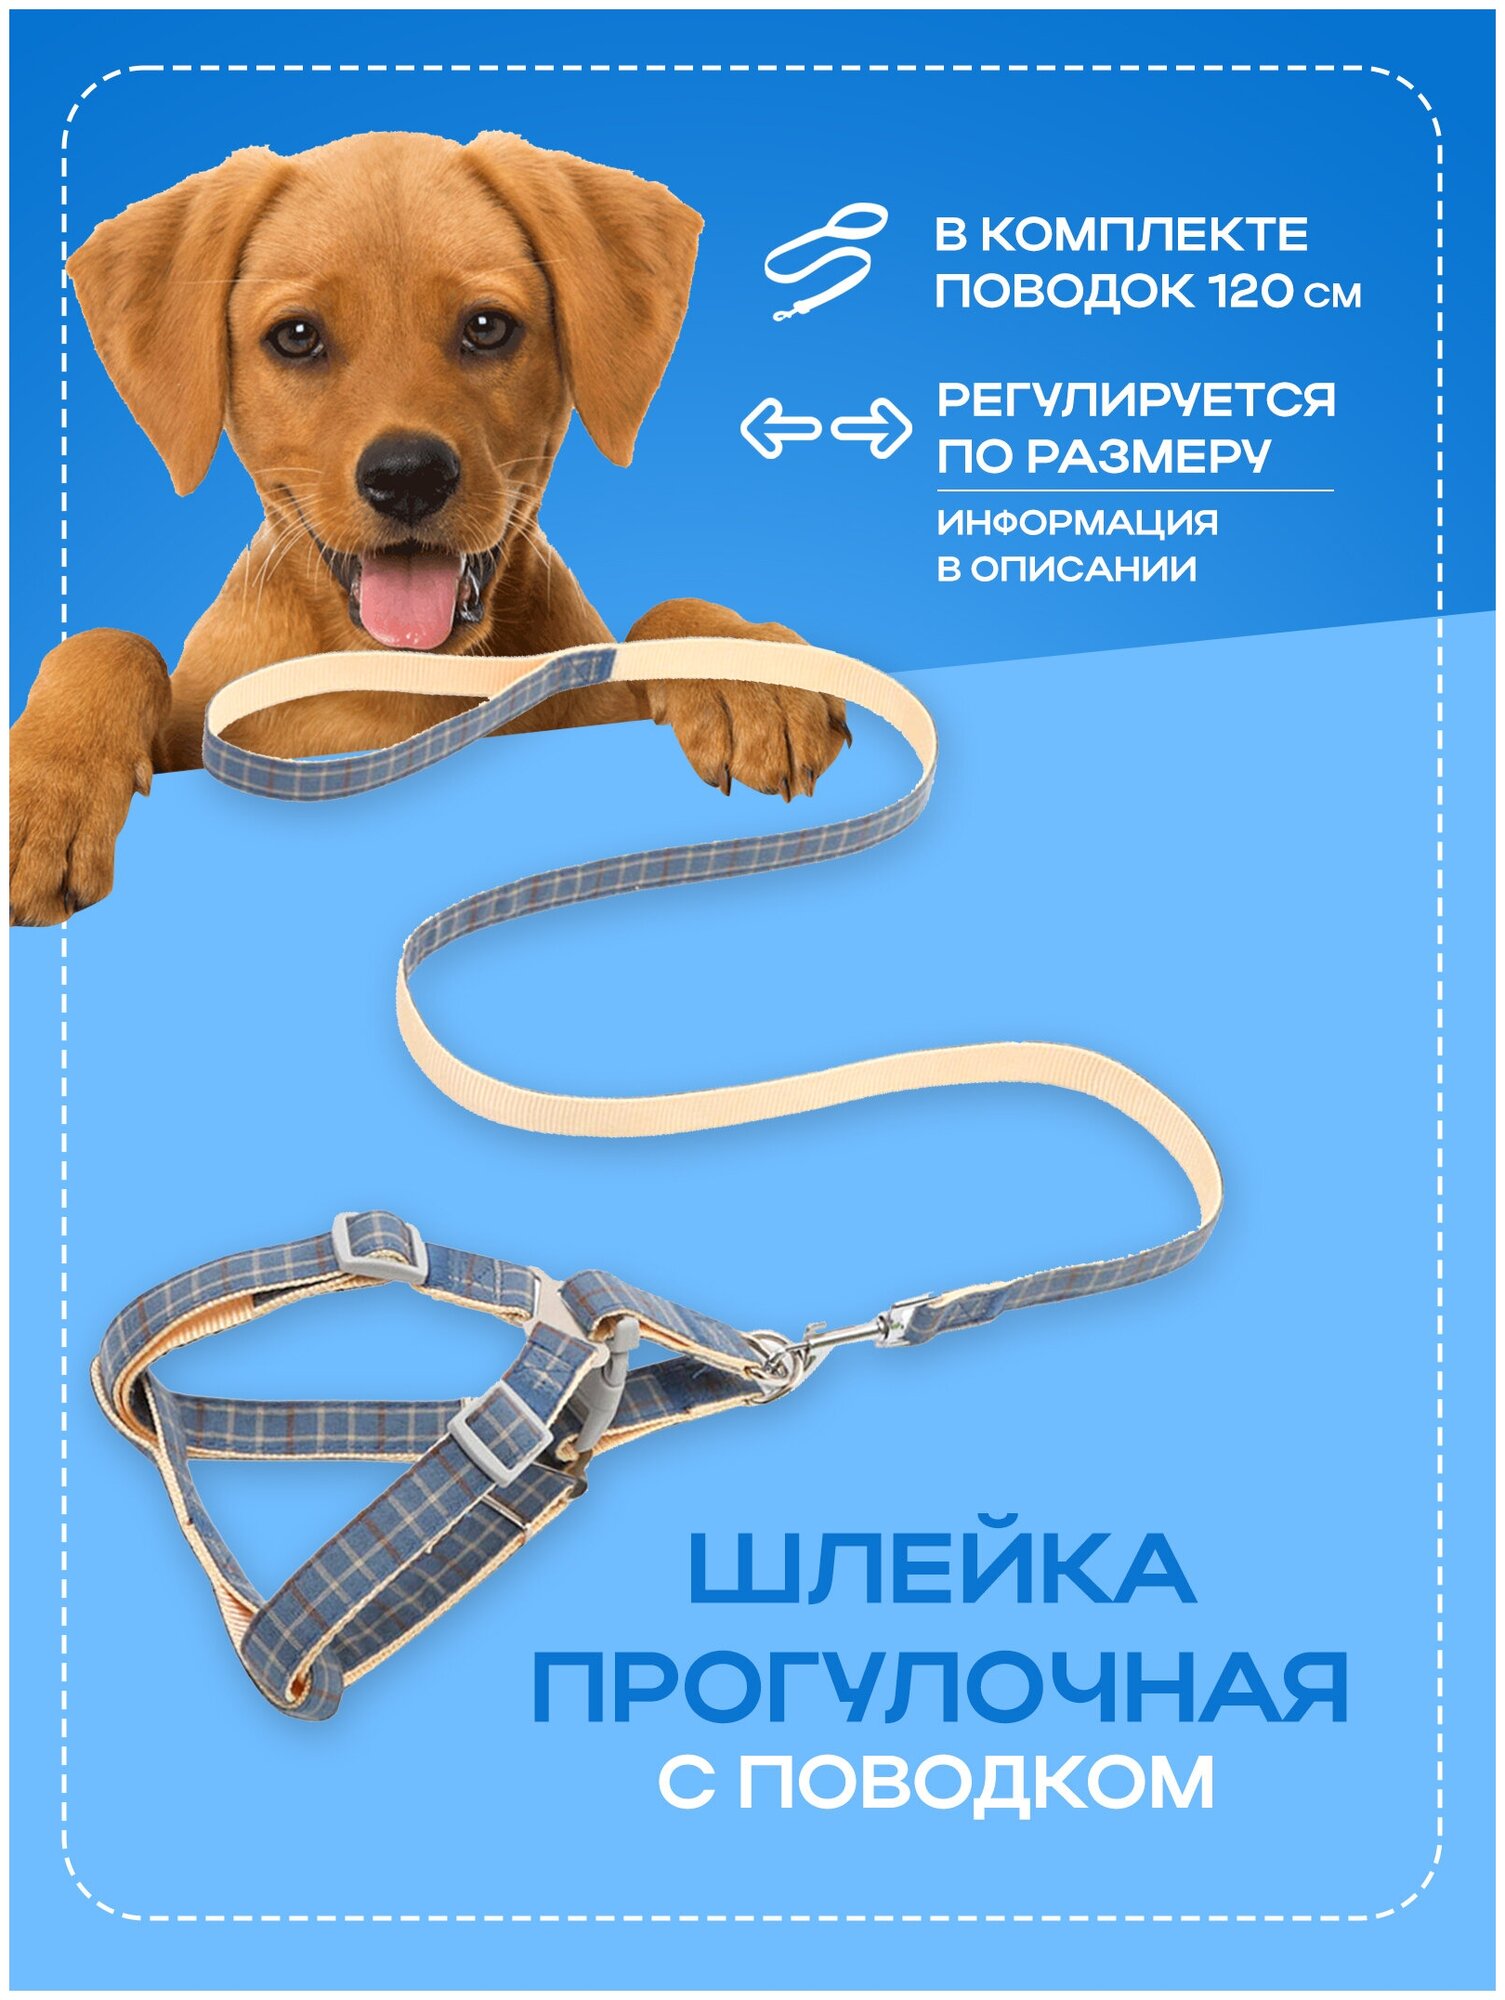 Шлейка прогулочная повседневная регулируемая для собак и кошек с проводком, амуниция для прогулки, голубой, размер L